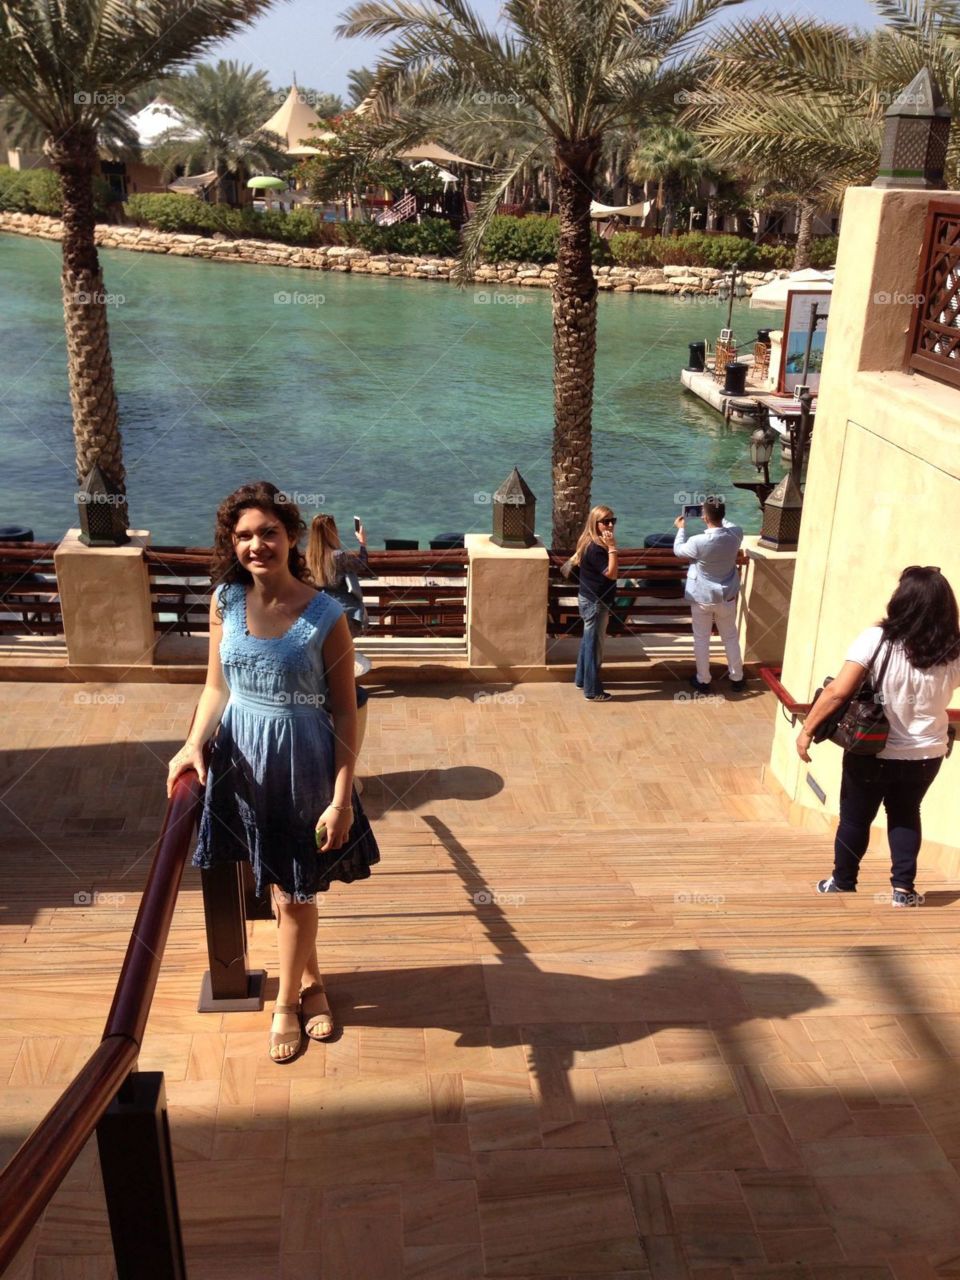 Dubai - Souk Madinat Jumeirah
Sunny funny!